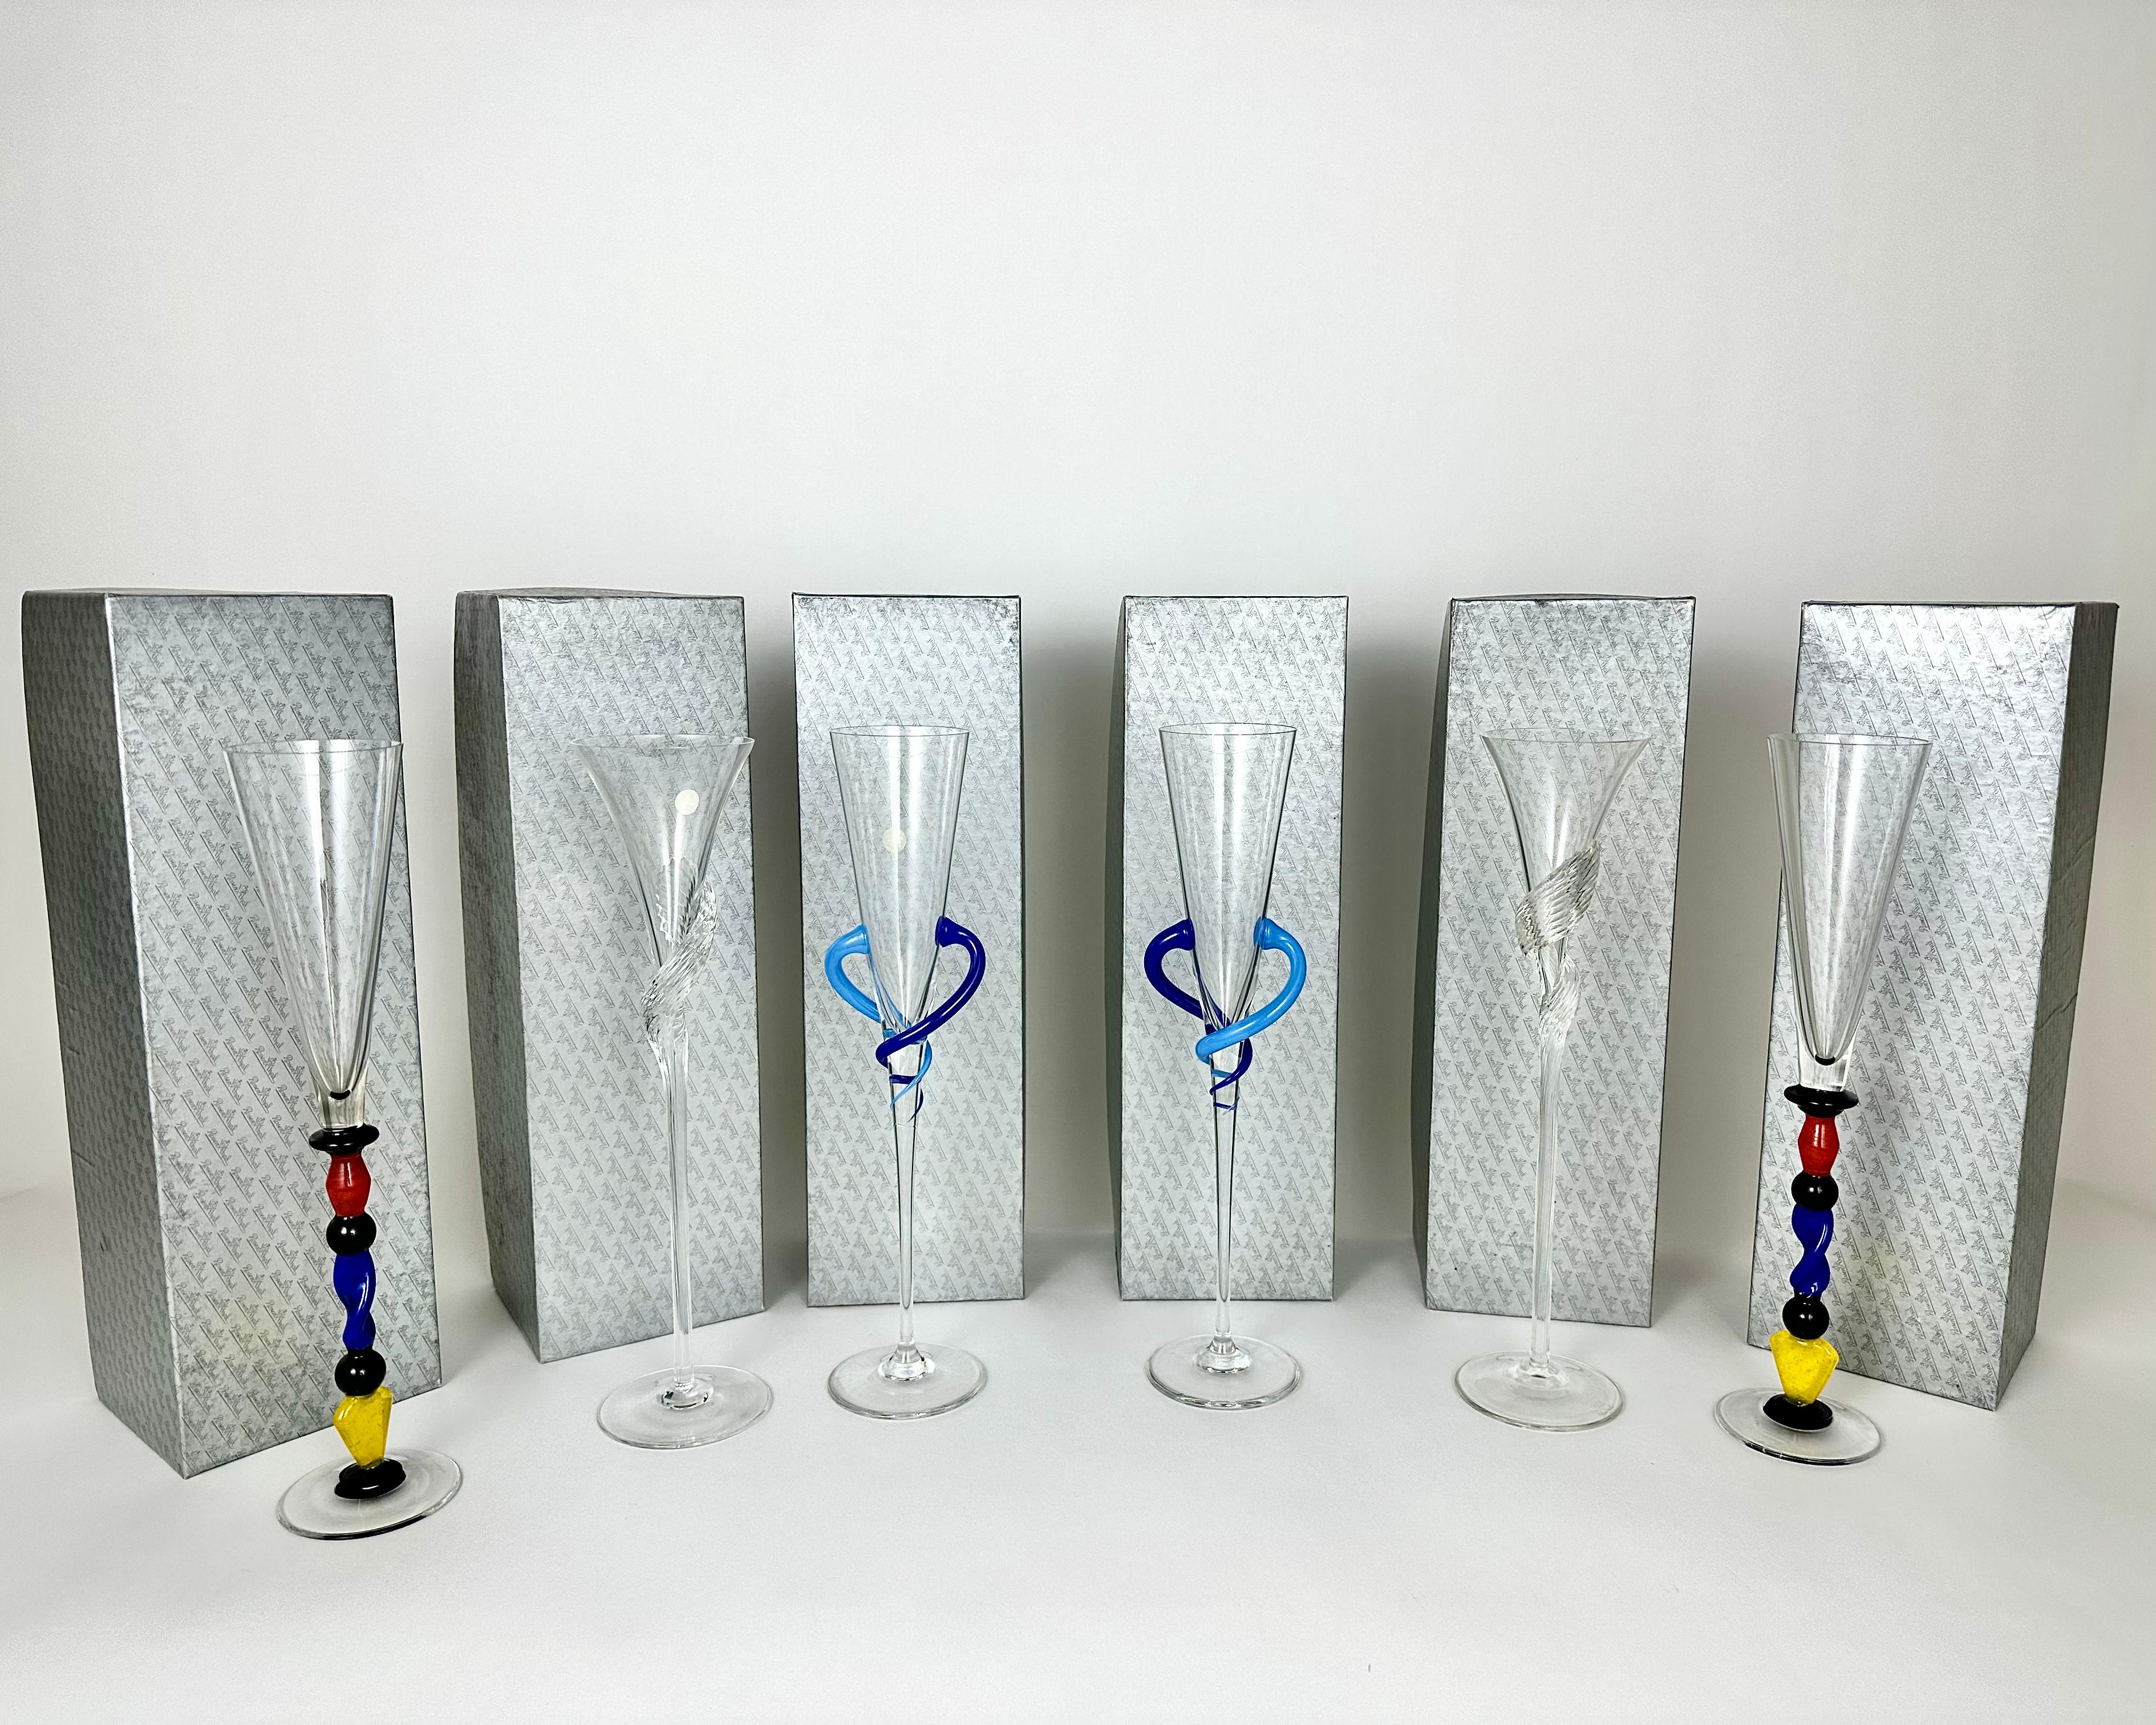 Die von Rosenthal Studio Line entworfenen einzigartigen Kristallgläser mit skulpturalem Stiel machen das Nippen an einem prickelnden Getränk zu etwas ganz Besonderem.

Die Kristallgläser von Peerless werden das Innere Ihres Hauses mit Komfort